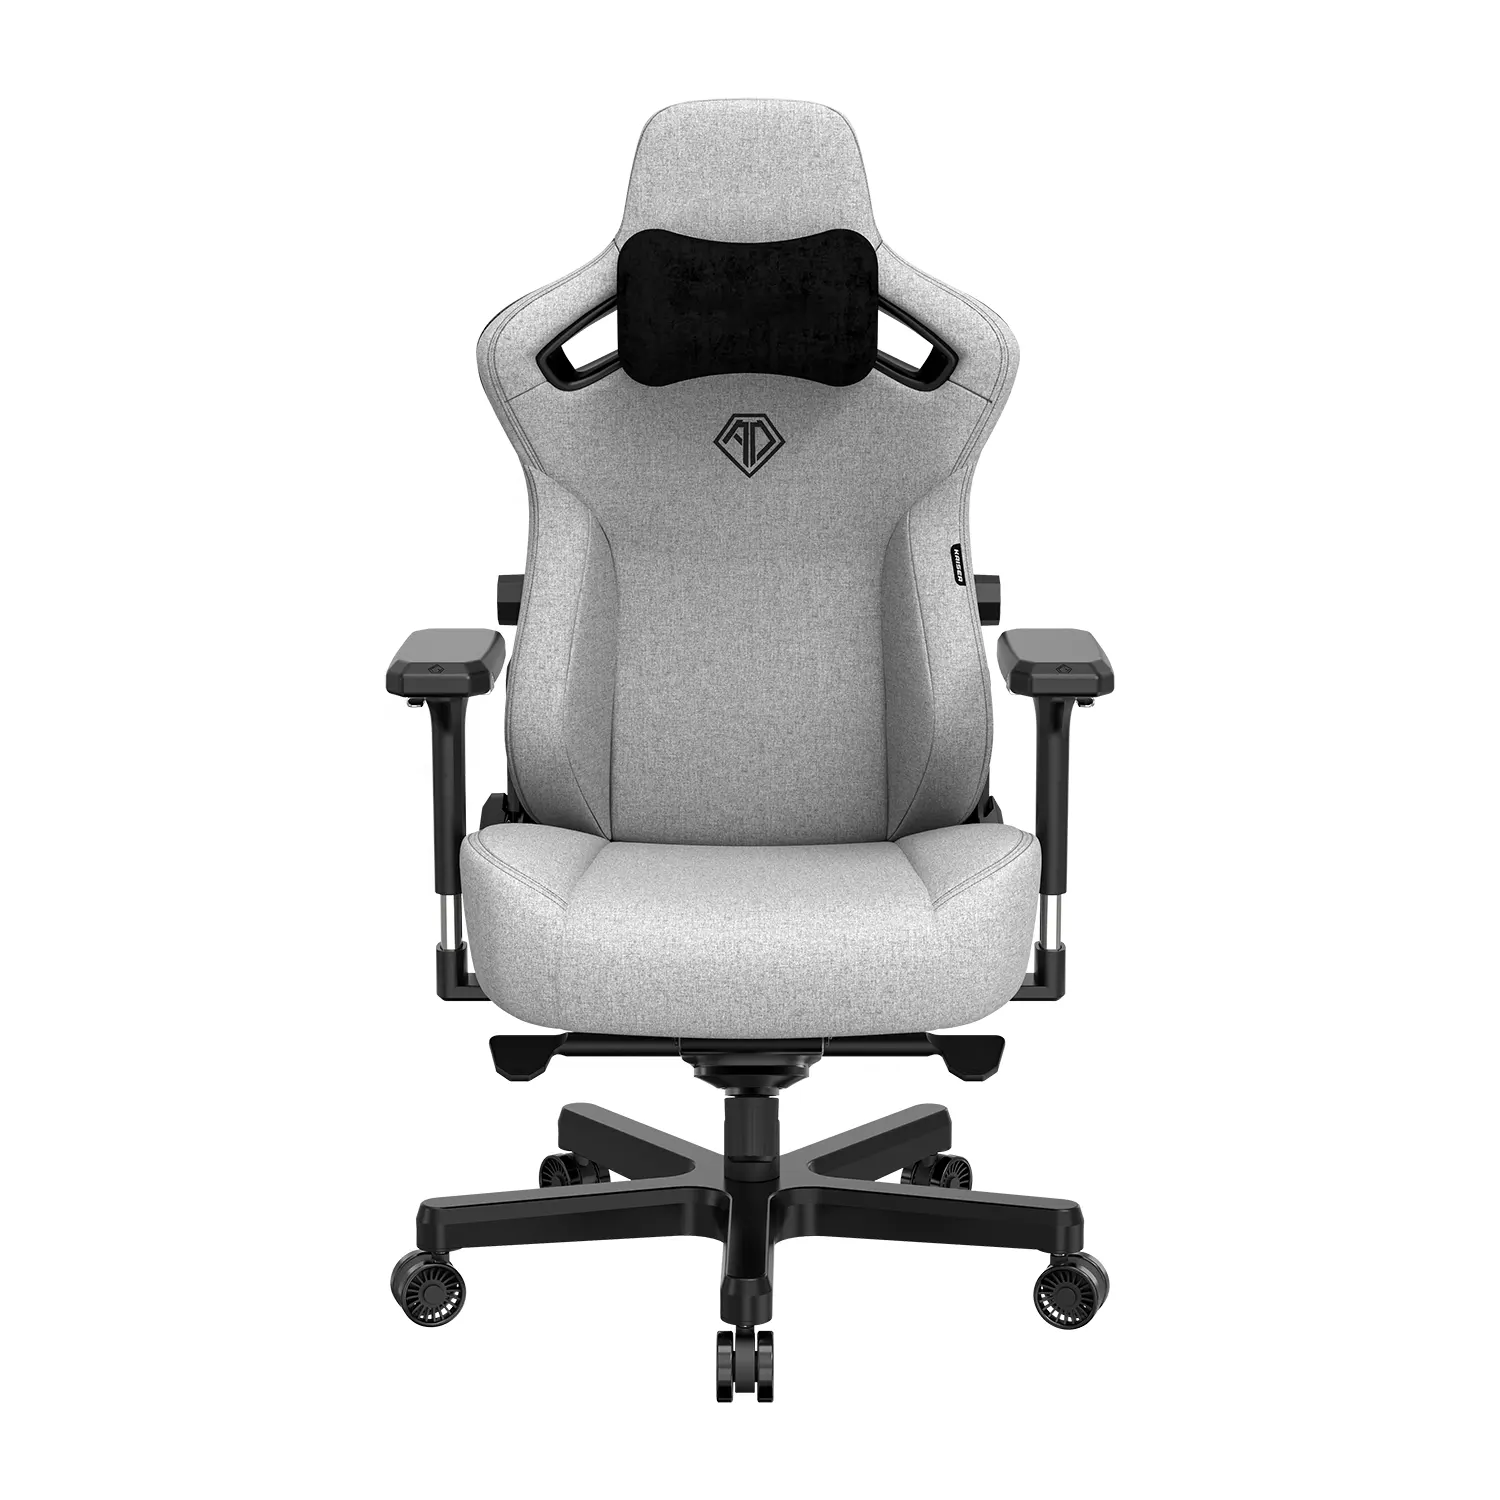 2022 несколько цветов темно-серая ткань игровой стул колесиках безопасность и долговечность Премиум игровое кресло до 400lbs для войлоке менеджер